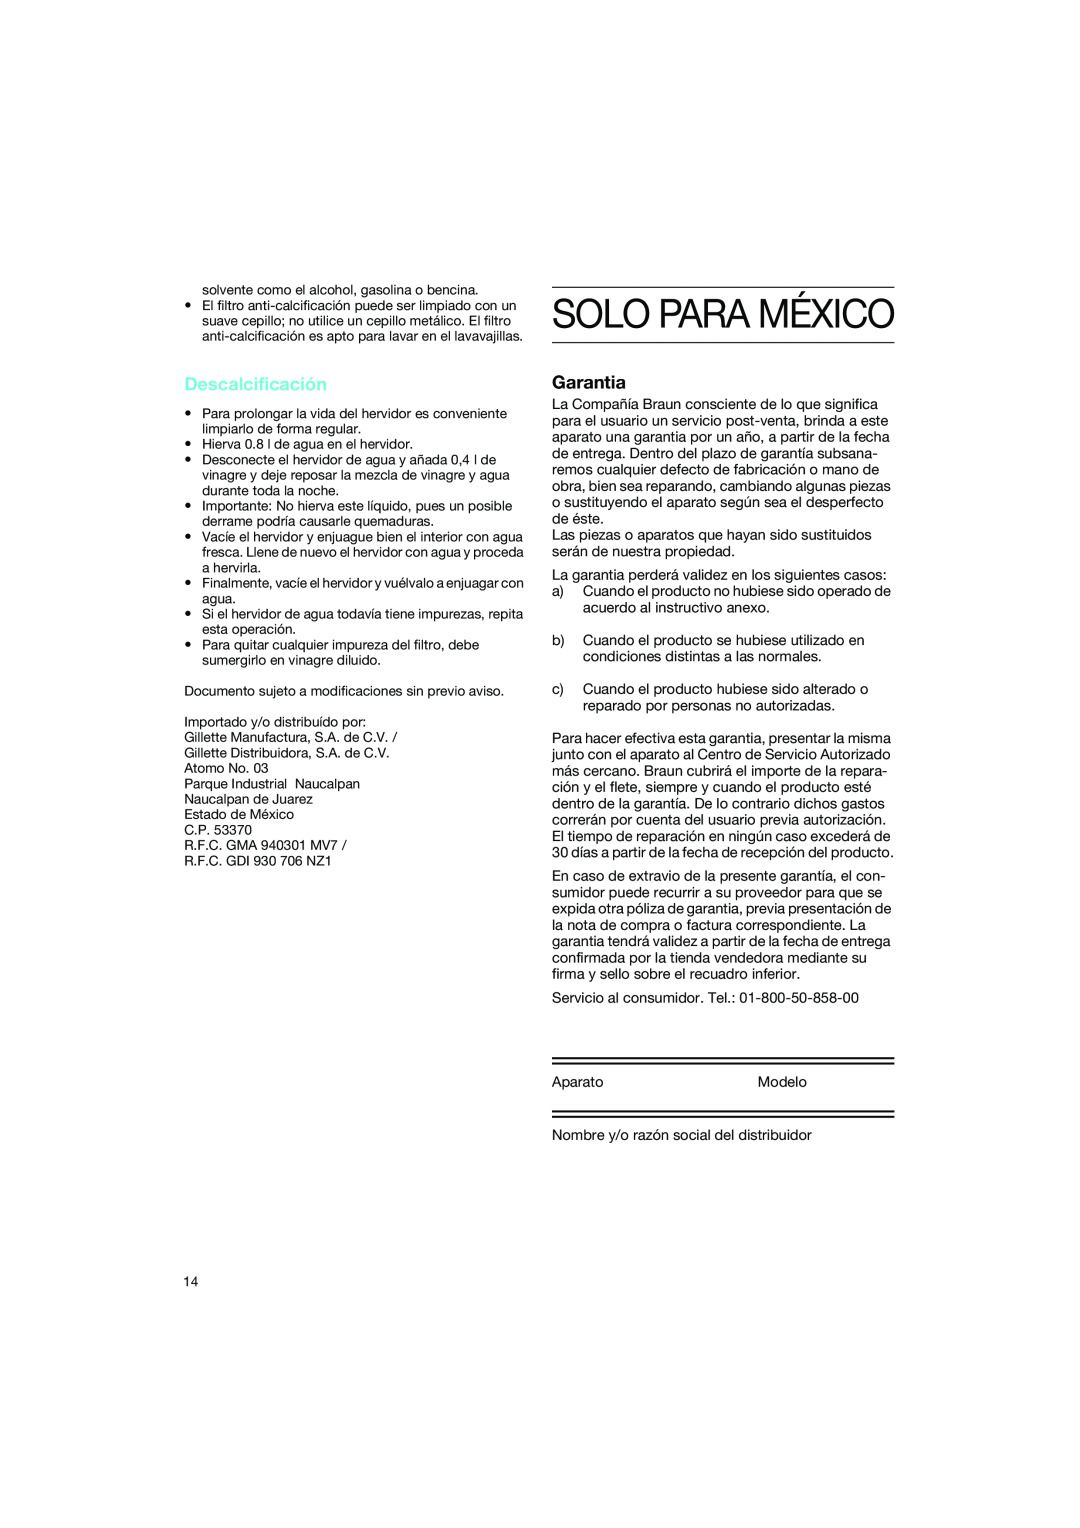 Braun WK 600 manual Descalcificación, Garantia 